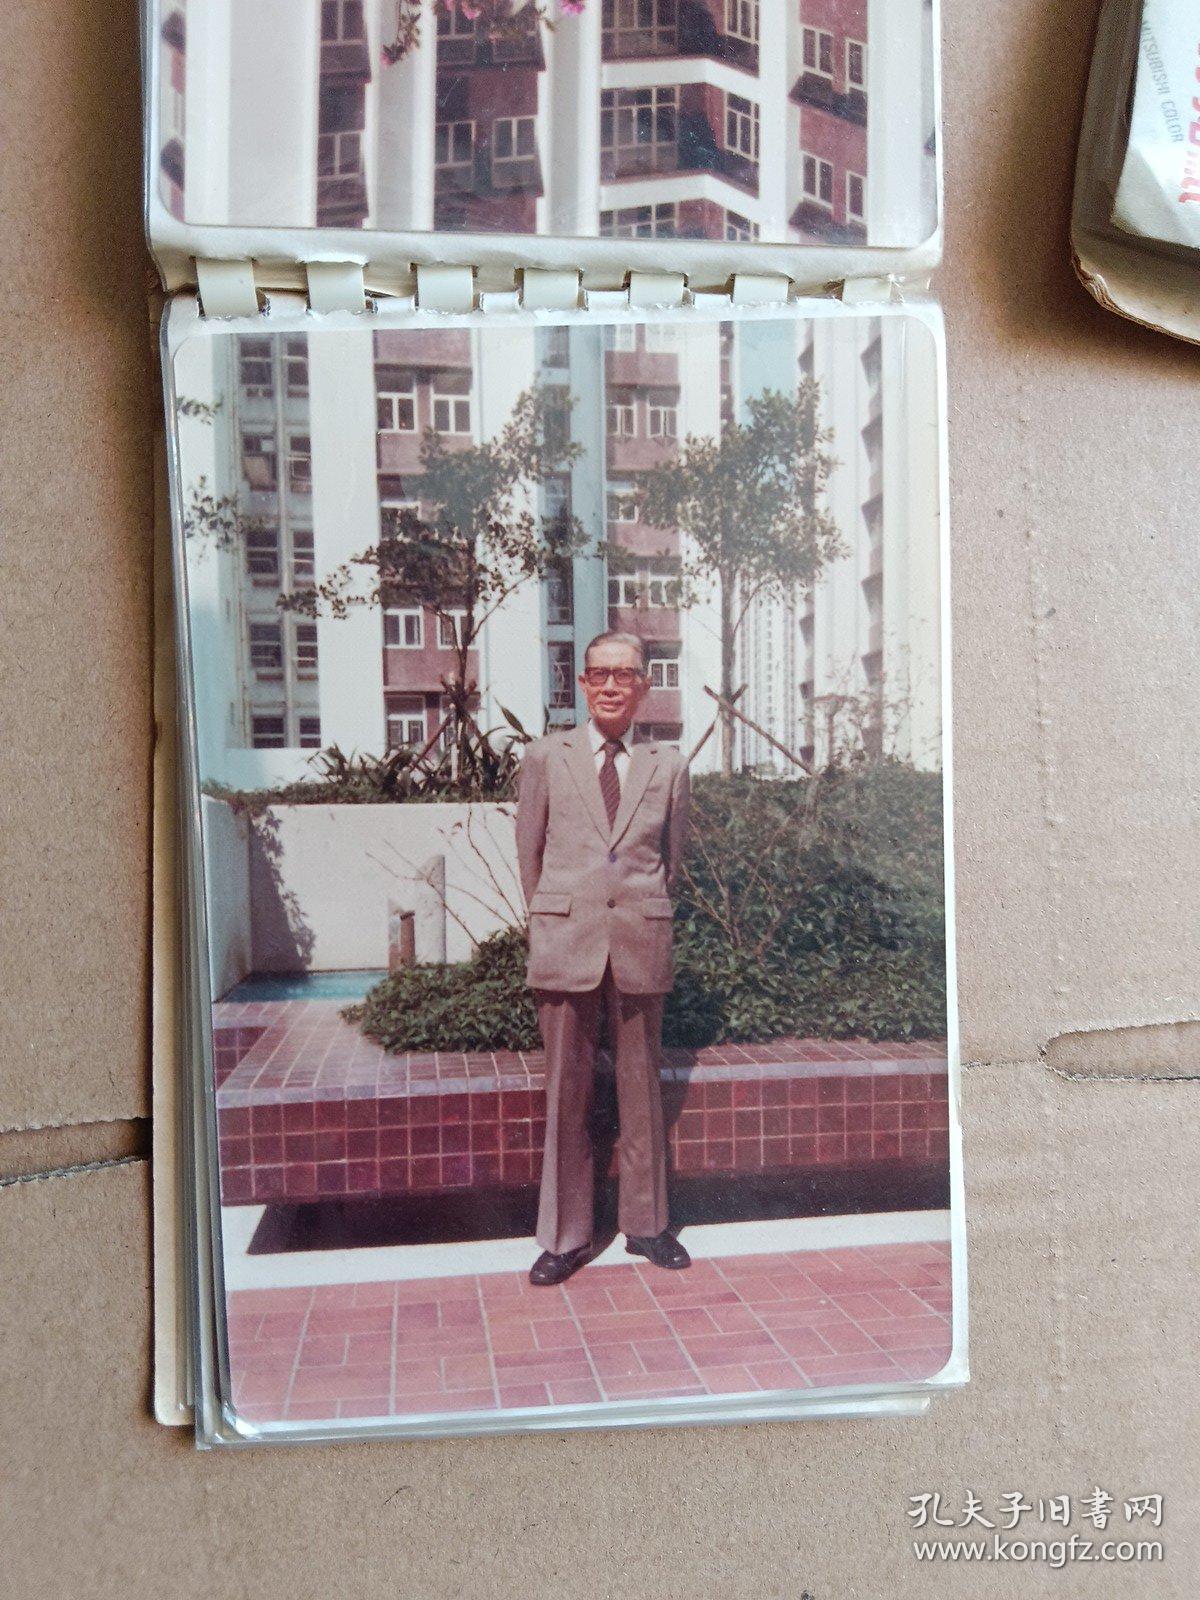 李伯球先生影集80年代老照片（二）。
李伯球先生影集80年代老照片（一）和李伯球先生影集80年代老照片（二）是一个订单，随便拍哪一个都可以。来源地：北京